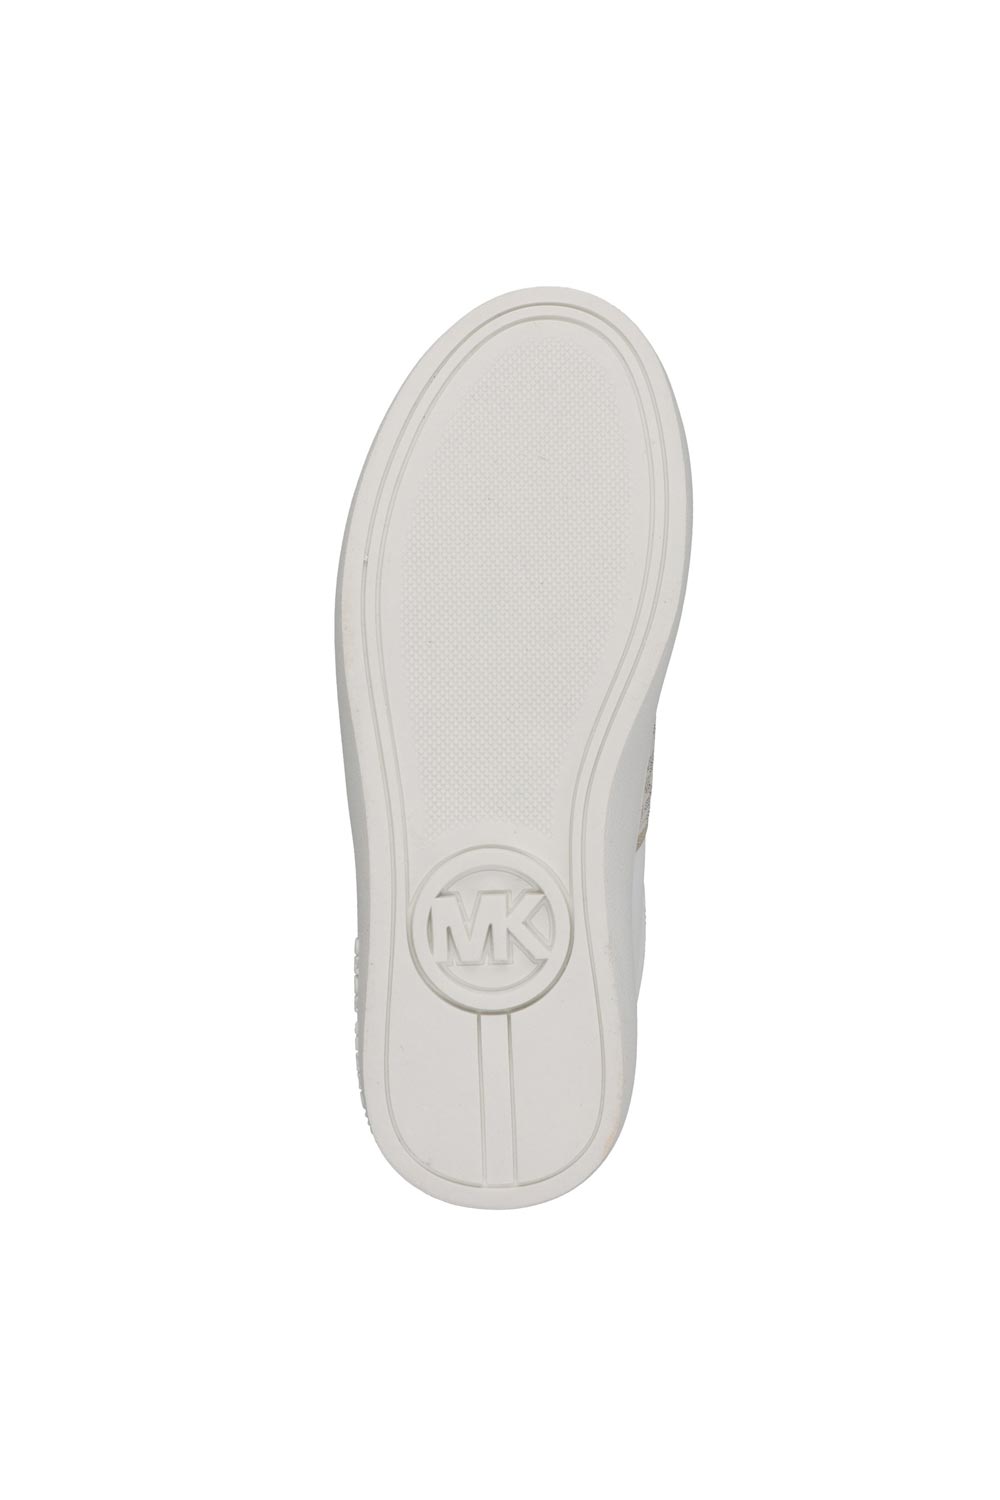 מייקל קורס נעלי סניקרס Jem Maxine בצבע לבן לילדות ונערות-Michael Kors-28-נאקו